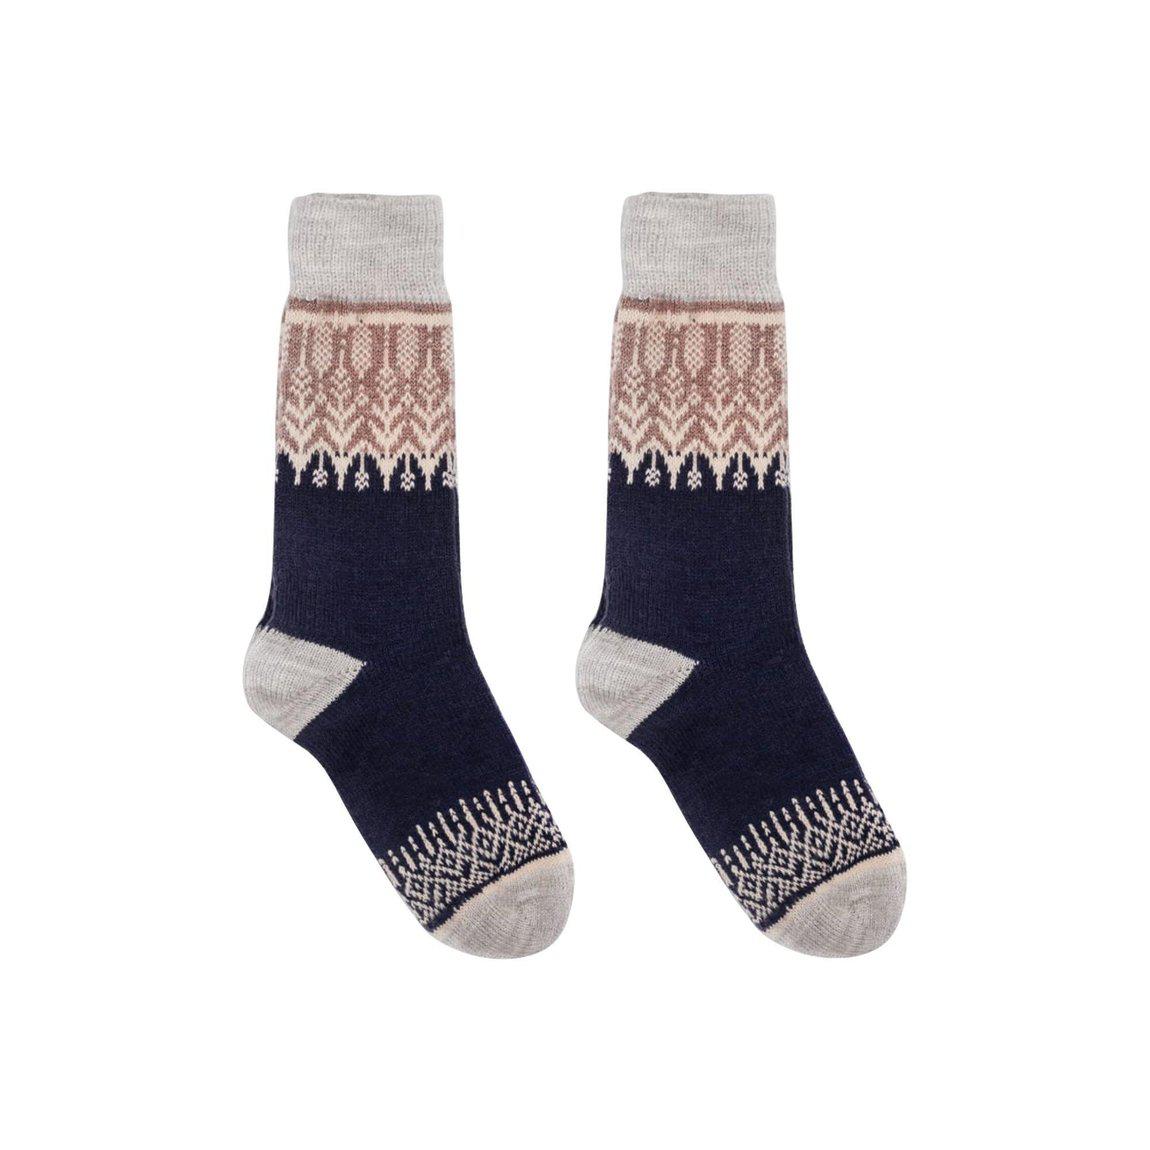 Nordic Socks Merino Wool in PERFORM™ (Yule - Navy) - Unisex